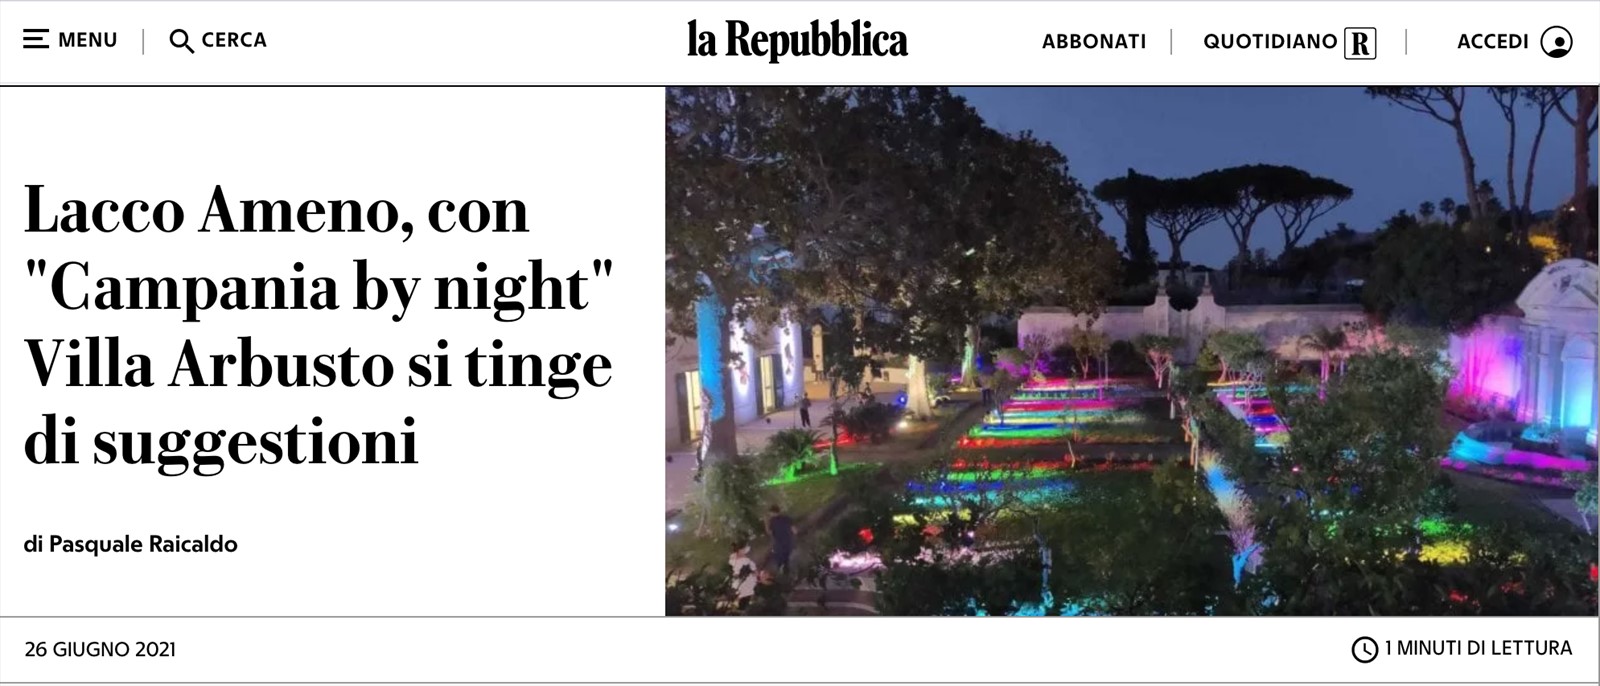 Lacco Ameno, con Campania by night Villa Arbusto si tinge di suggestioni